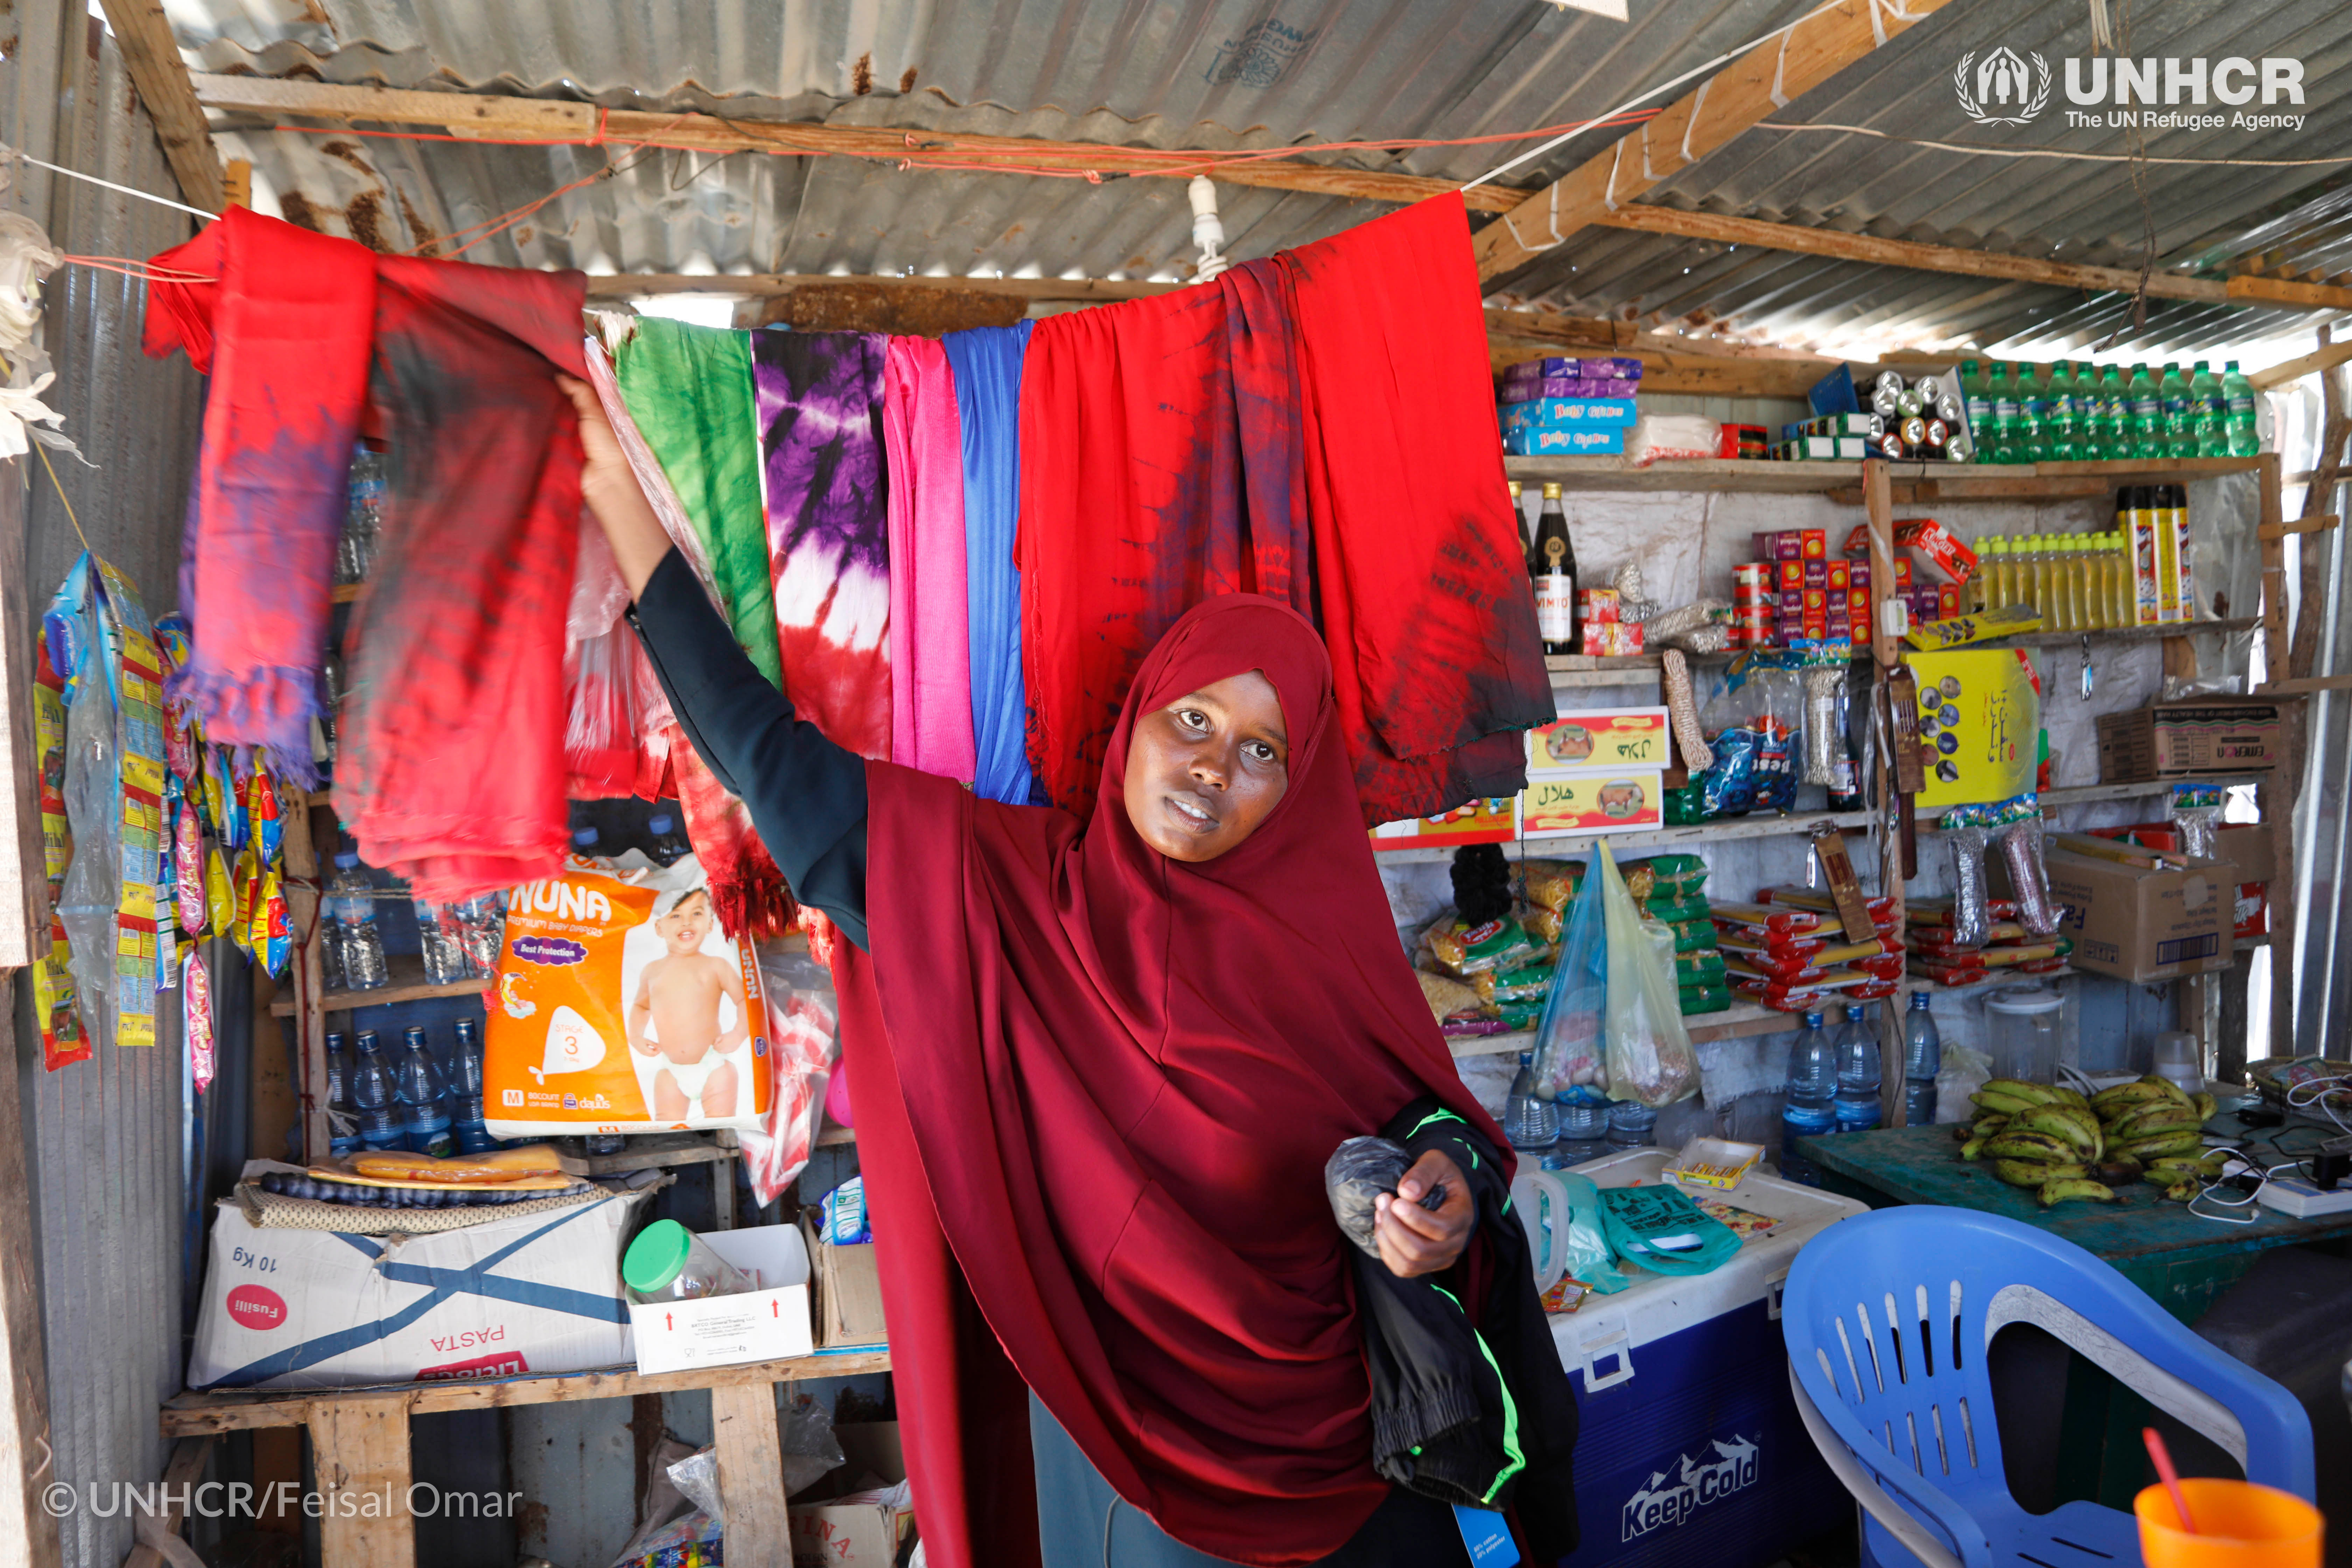 Une mère de famille rapatriée en Somalie ouvre un magasin local de vêtements teints, qu’elle a appris à confectioner et à commercialiser lors d’un programme de formation au Centre de Soutien aux Rapatriés en Somalie, où le HCR aide les réfugiés rapatriés à reconstruire leur vie. ©UNHCR/Feisal Omar